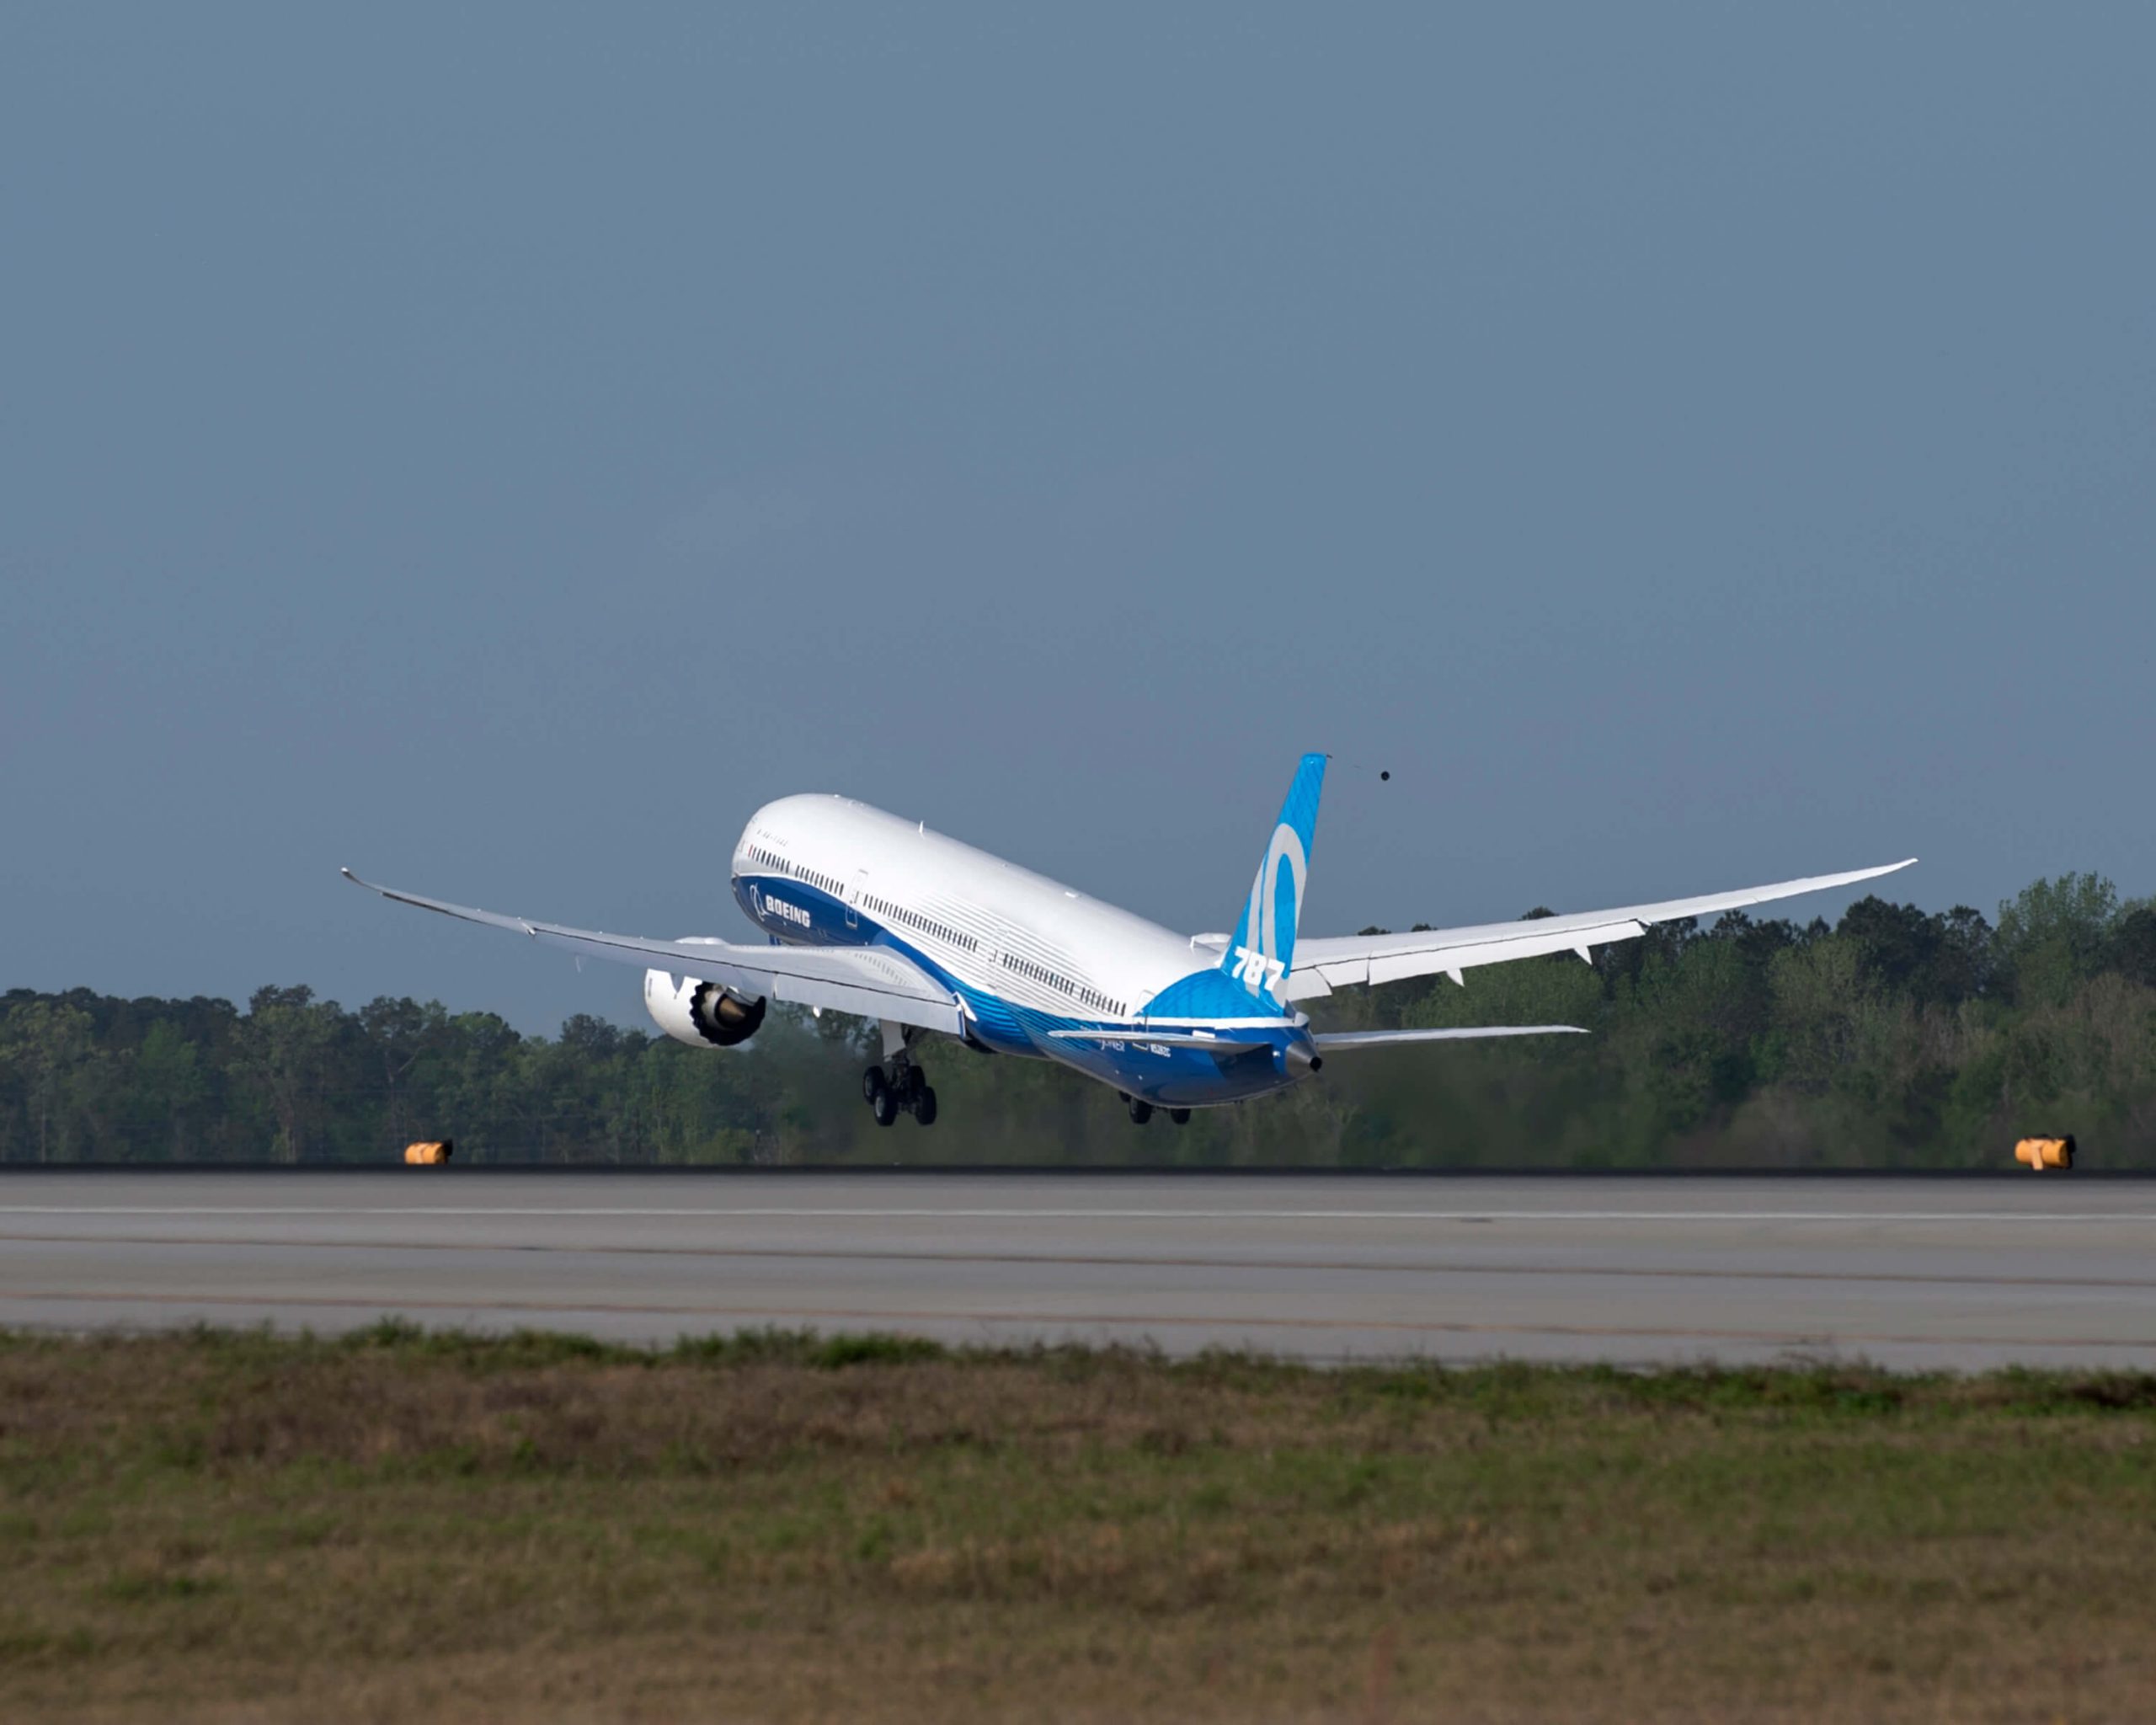 Korean Air adds 30 new Boeing 787 Dreamliner airplanes